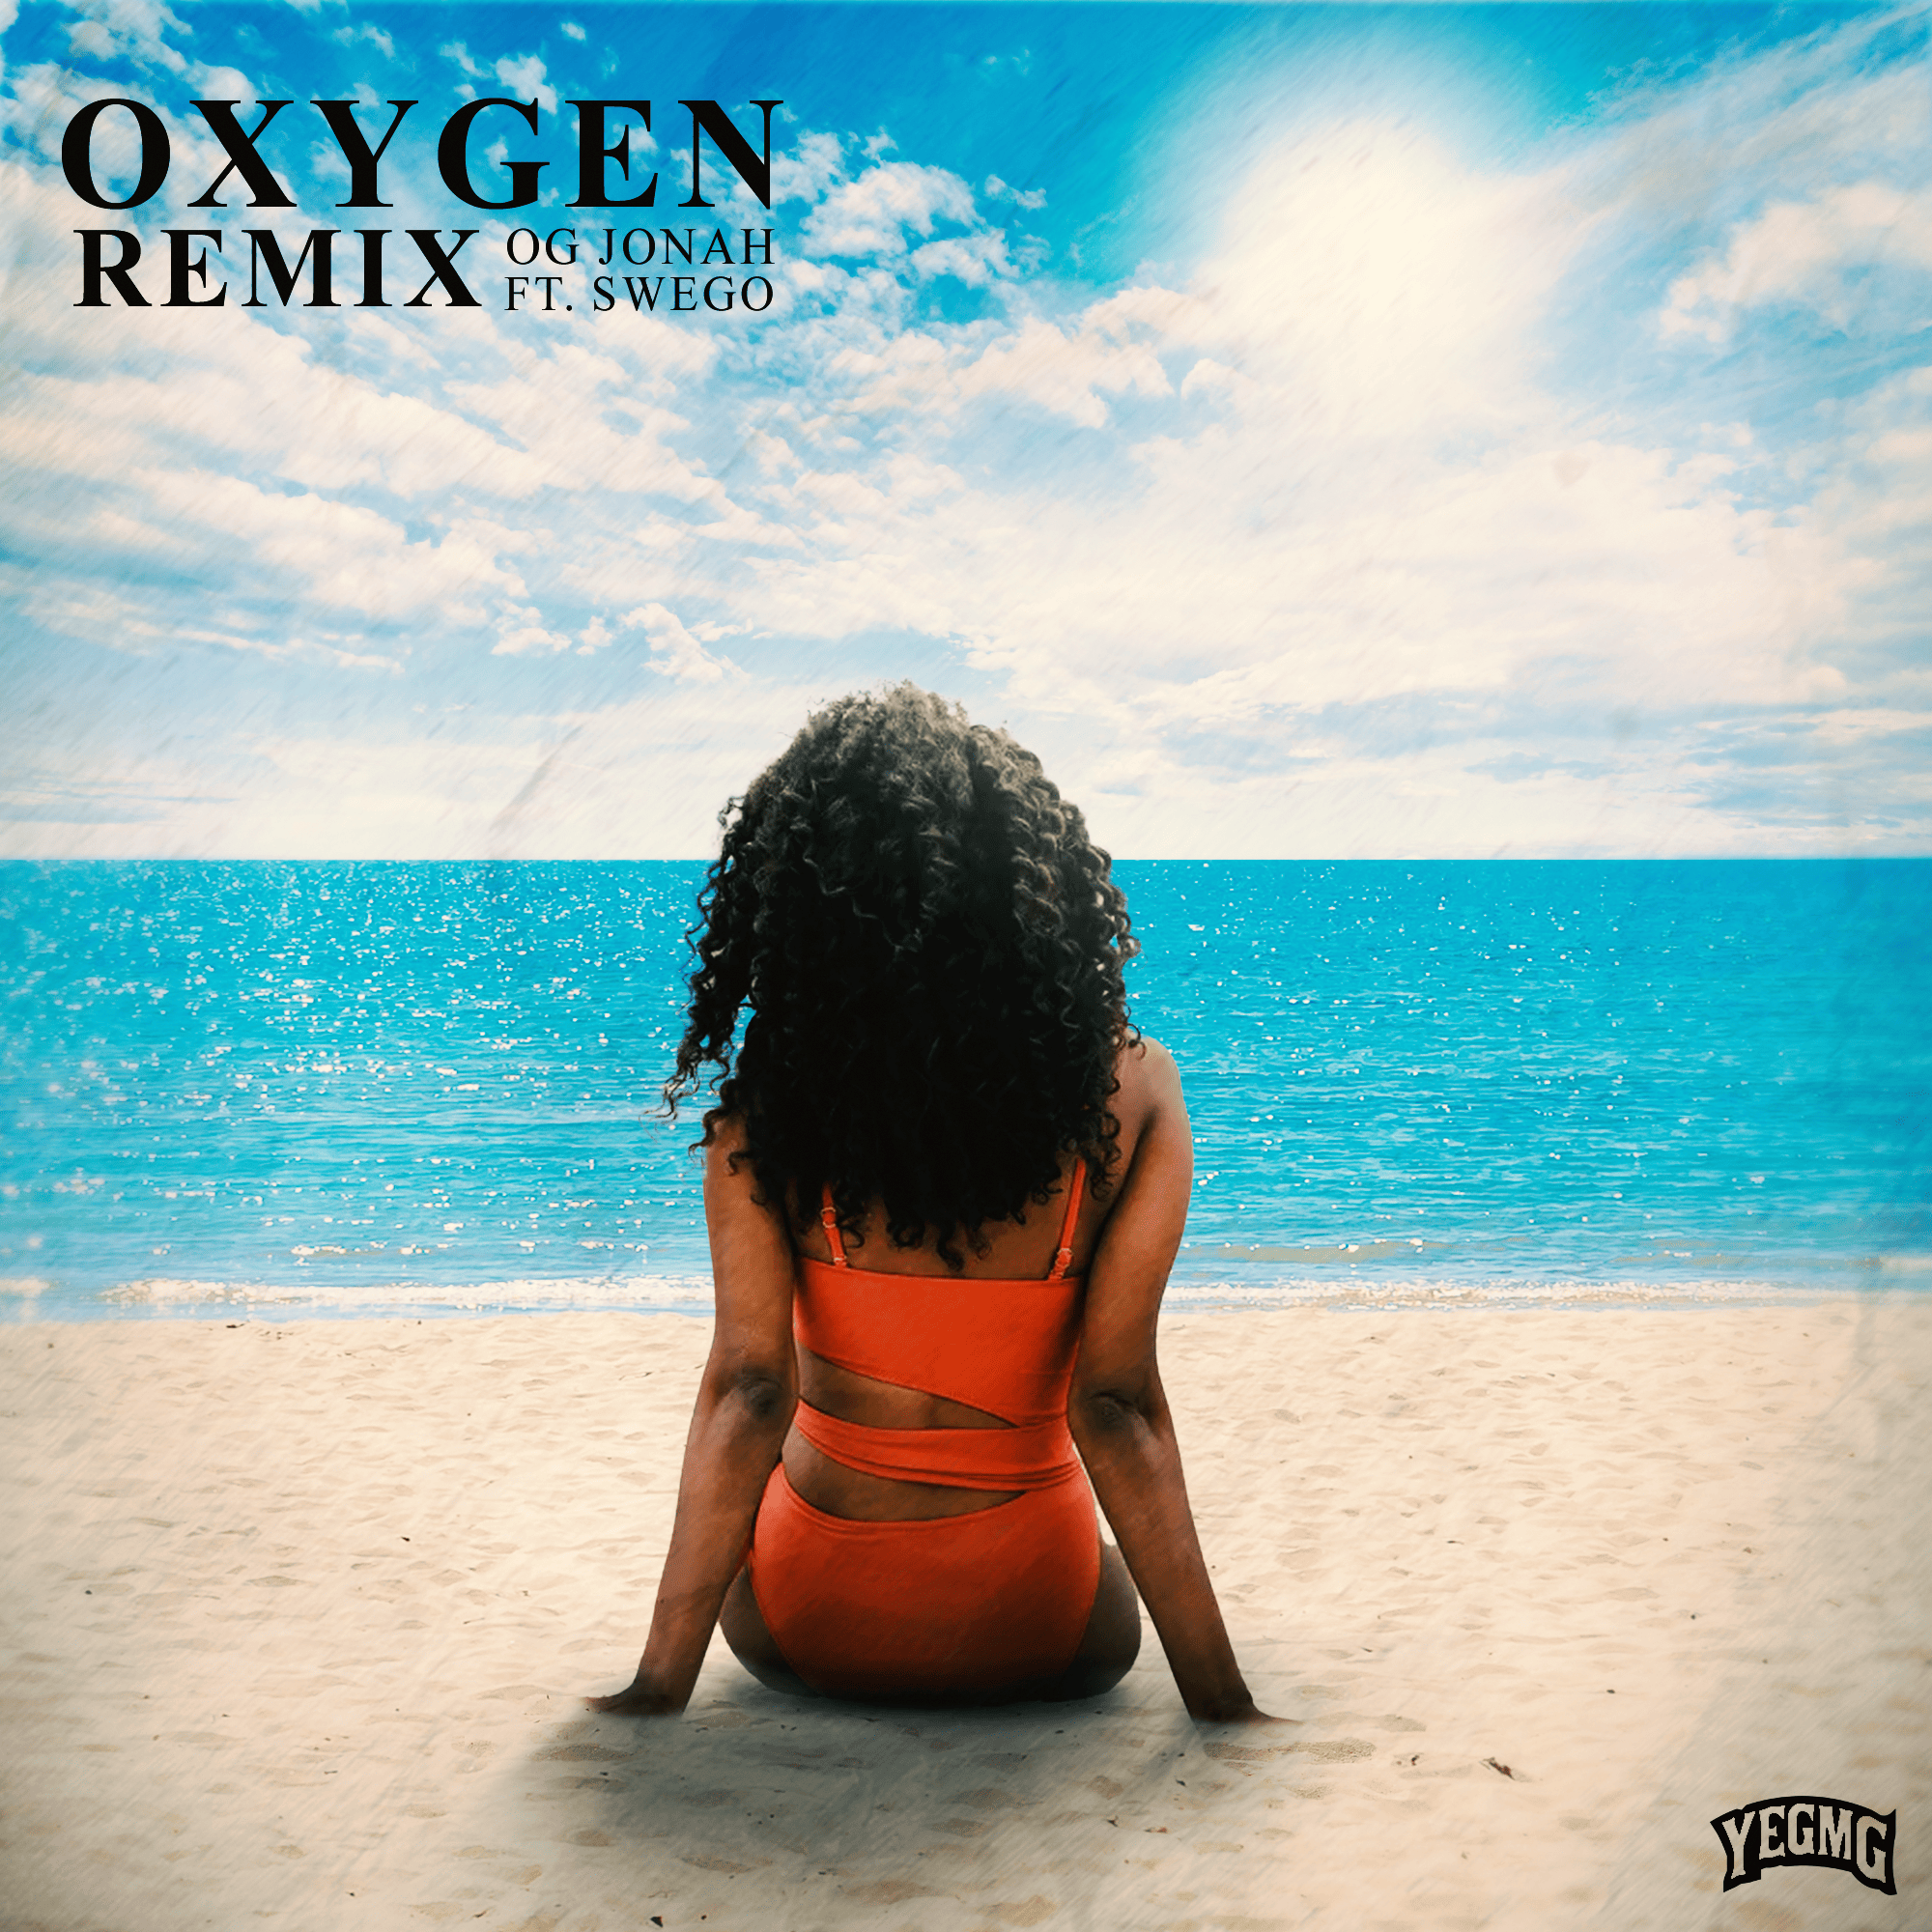 Oxygen (remix) Ft. Swego